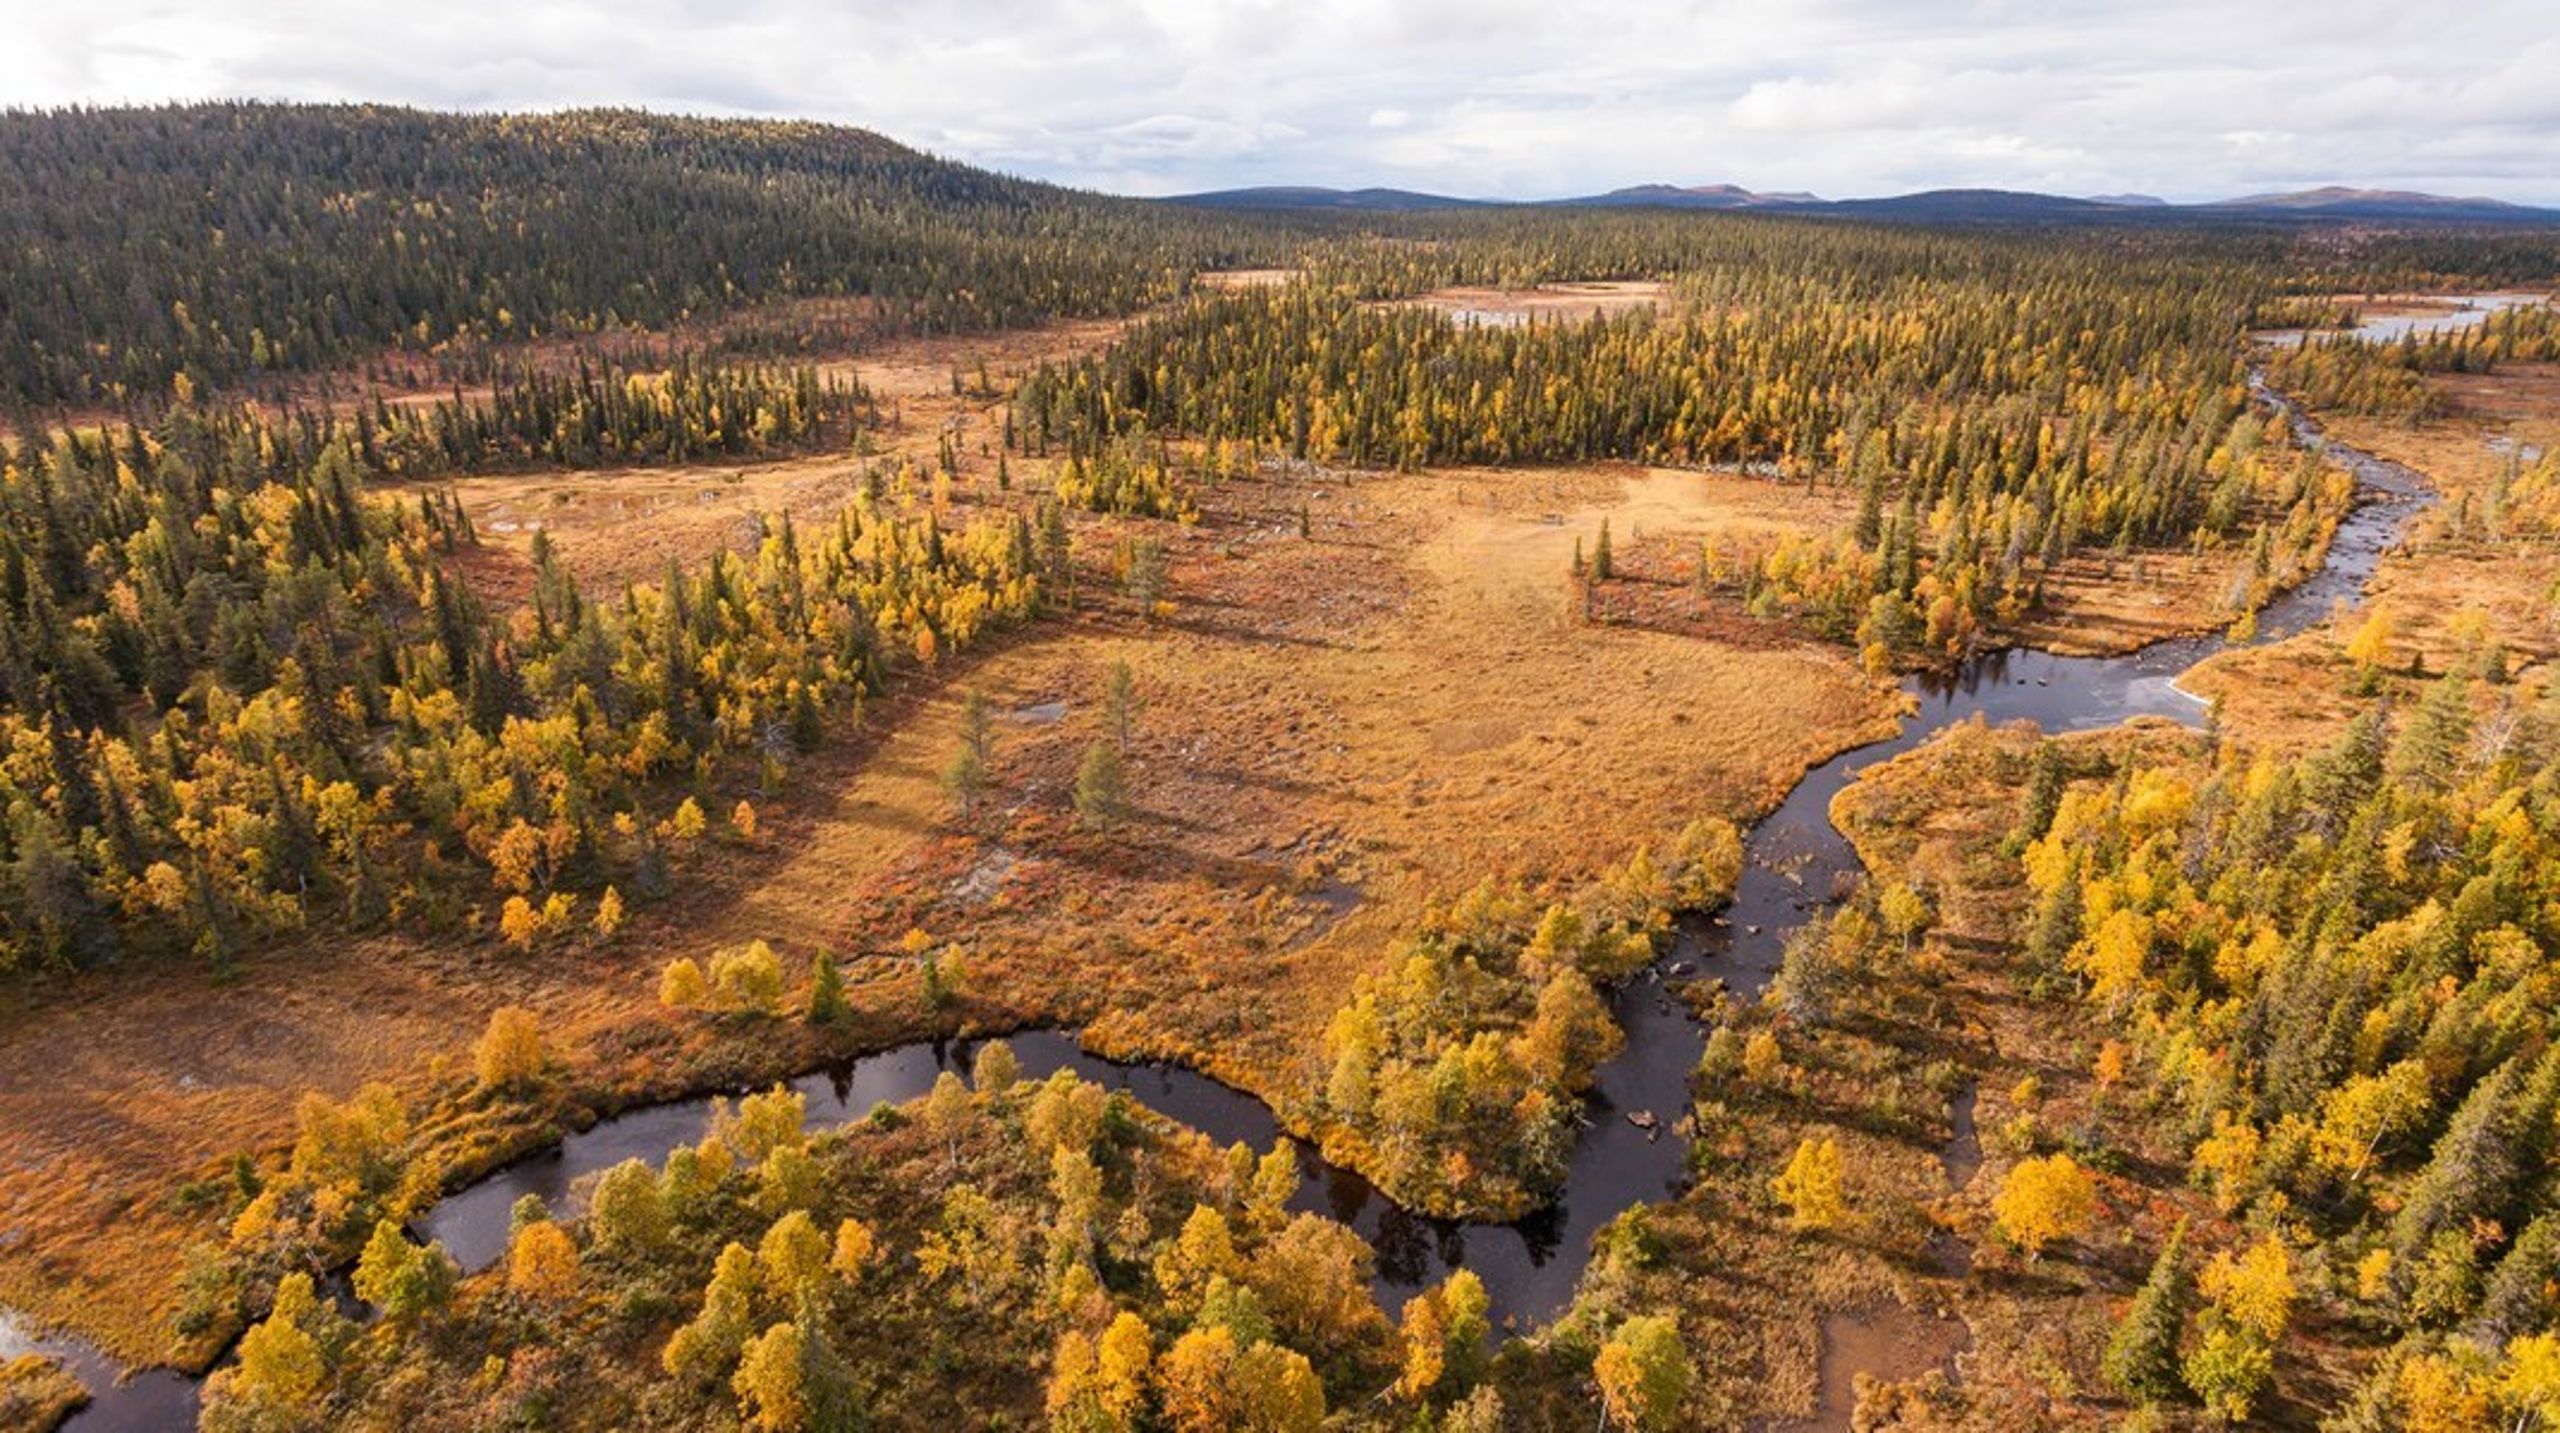 Njallaberget i Arjeplog är ett av de områden med skog som är mellan 150 och 200 år gammal, som ska bli naturreservat i Sverige. <br>